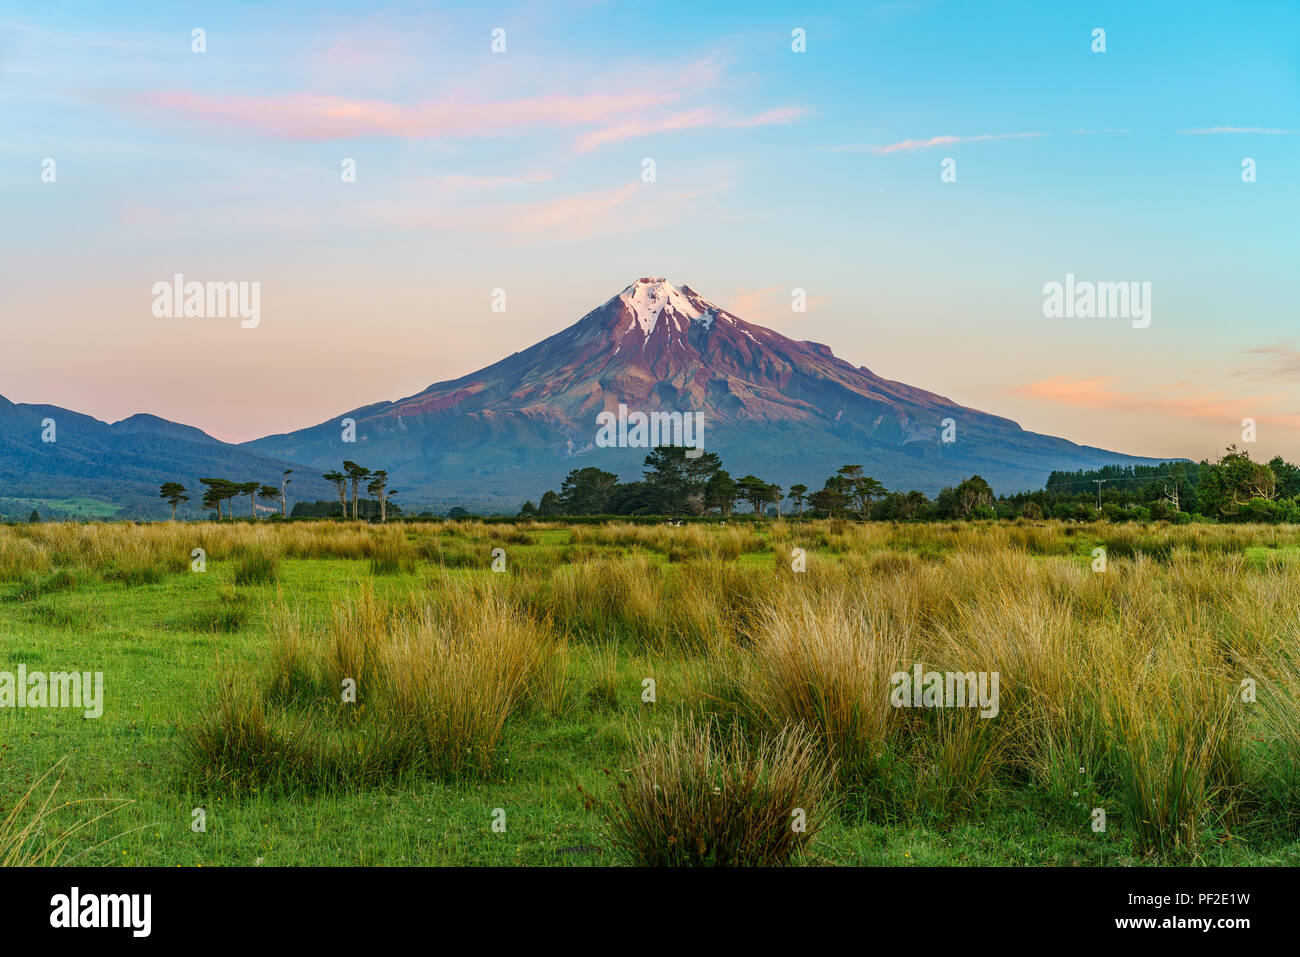 lush grass,trees and the cone volcano mount taranaki, new zealand Stock Photo